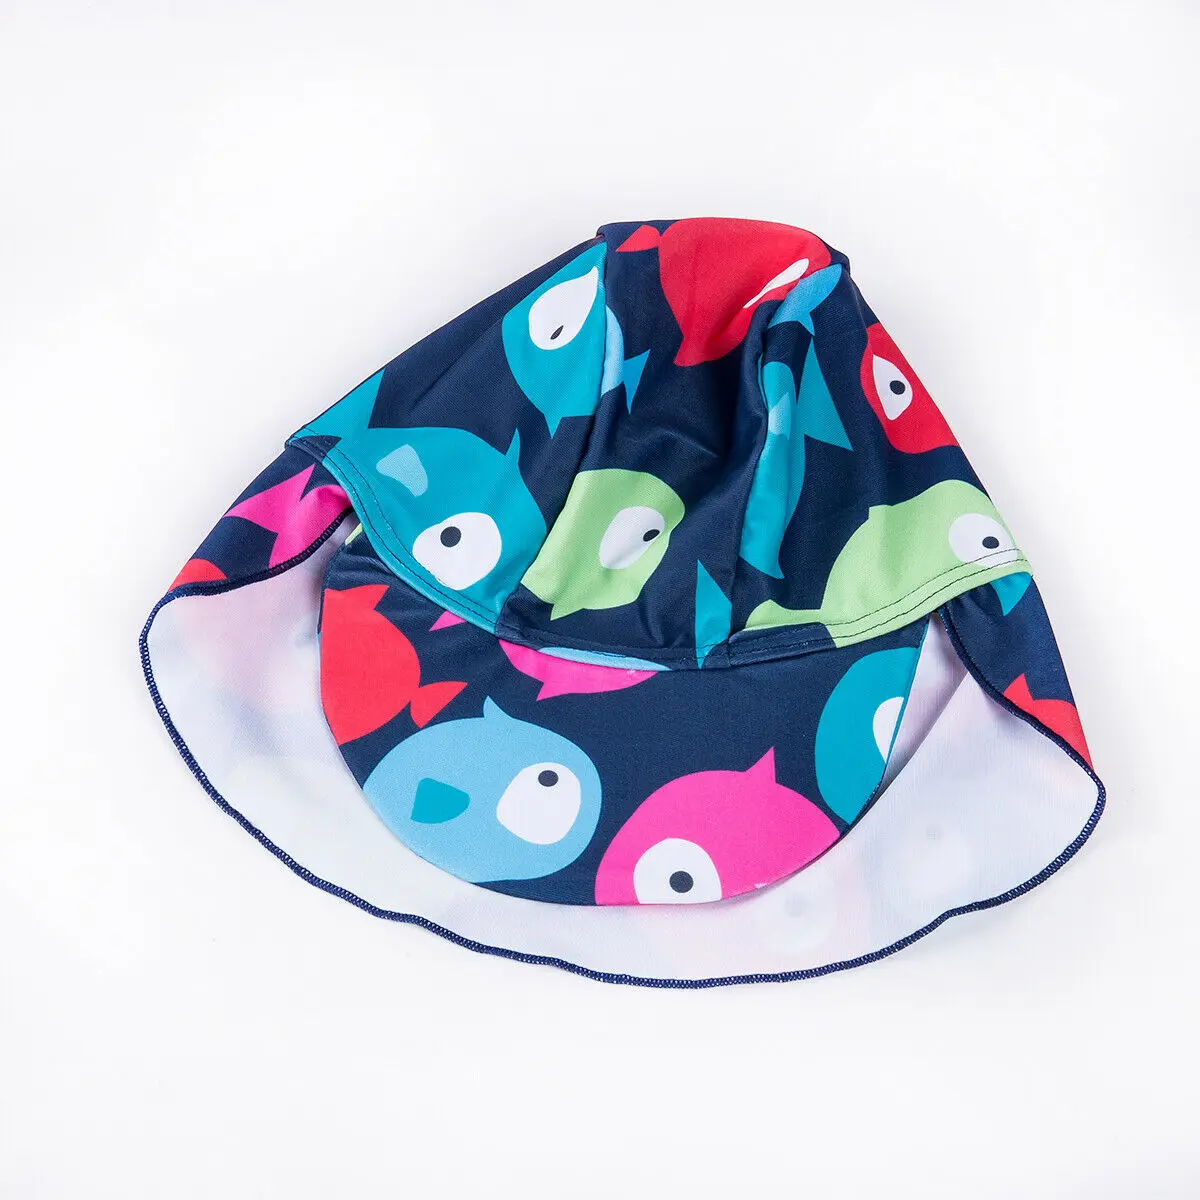 Новая летняя одежда для мальчика, детские купальники шапка комплект из 2 предметов в виде пасти акулы с плаавающими рыбками, зимний комбинезон для младенцев купальники для малышей Детские пляжные шорты для купания, сёрфинга одежда